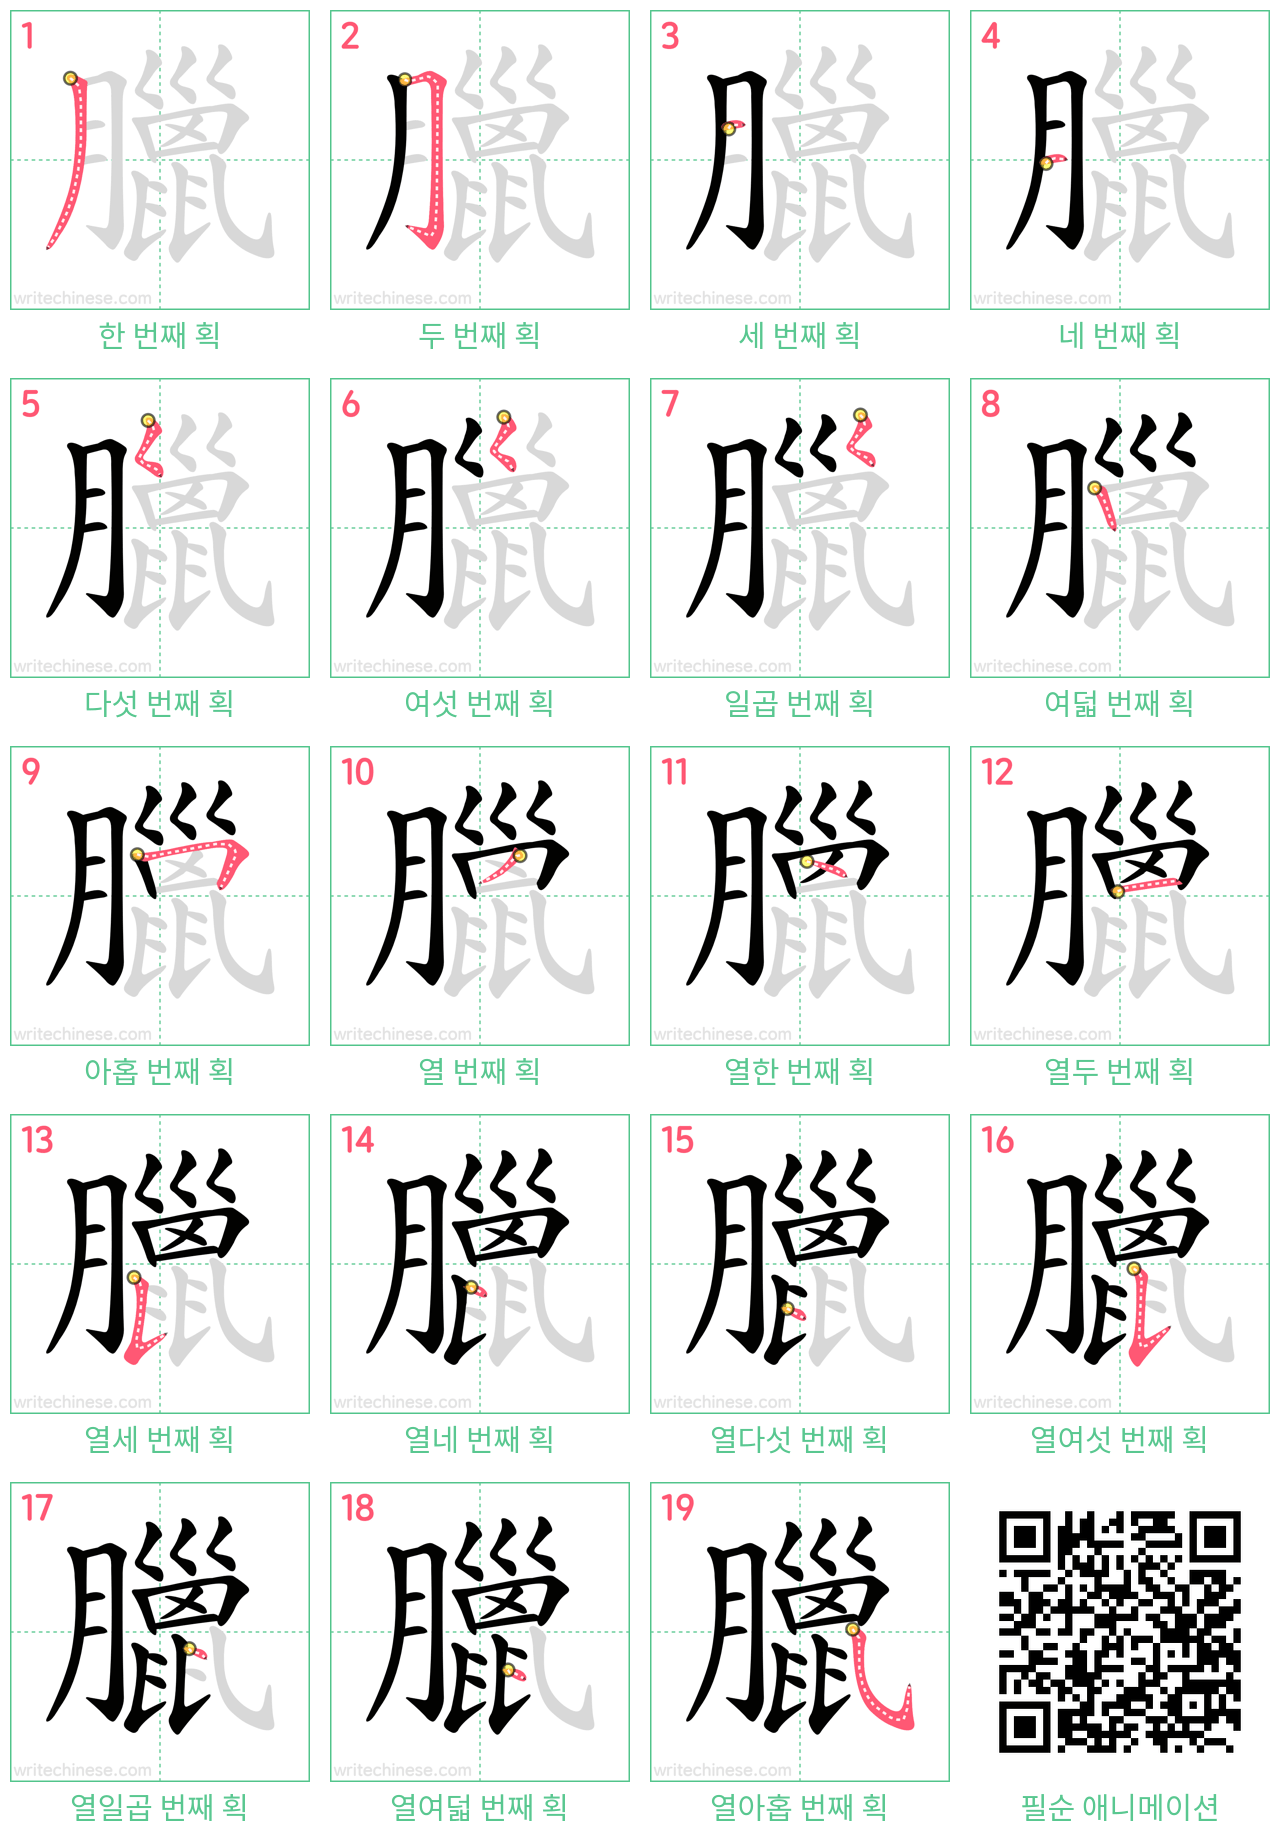 臘 step-by-step stroke order diagrams